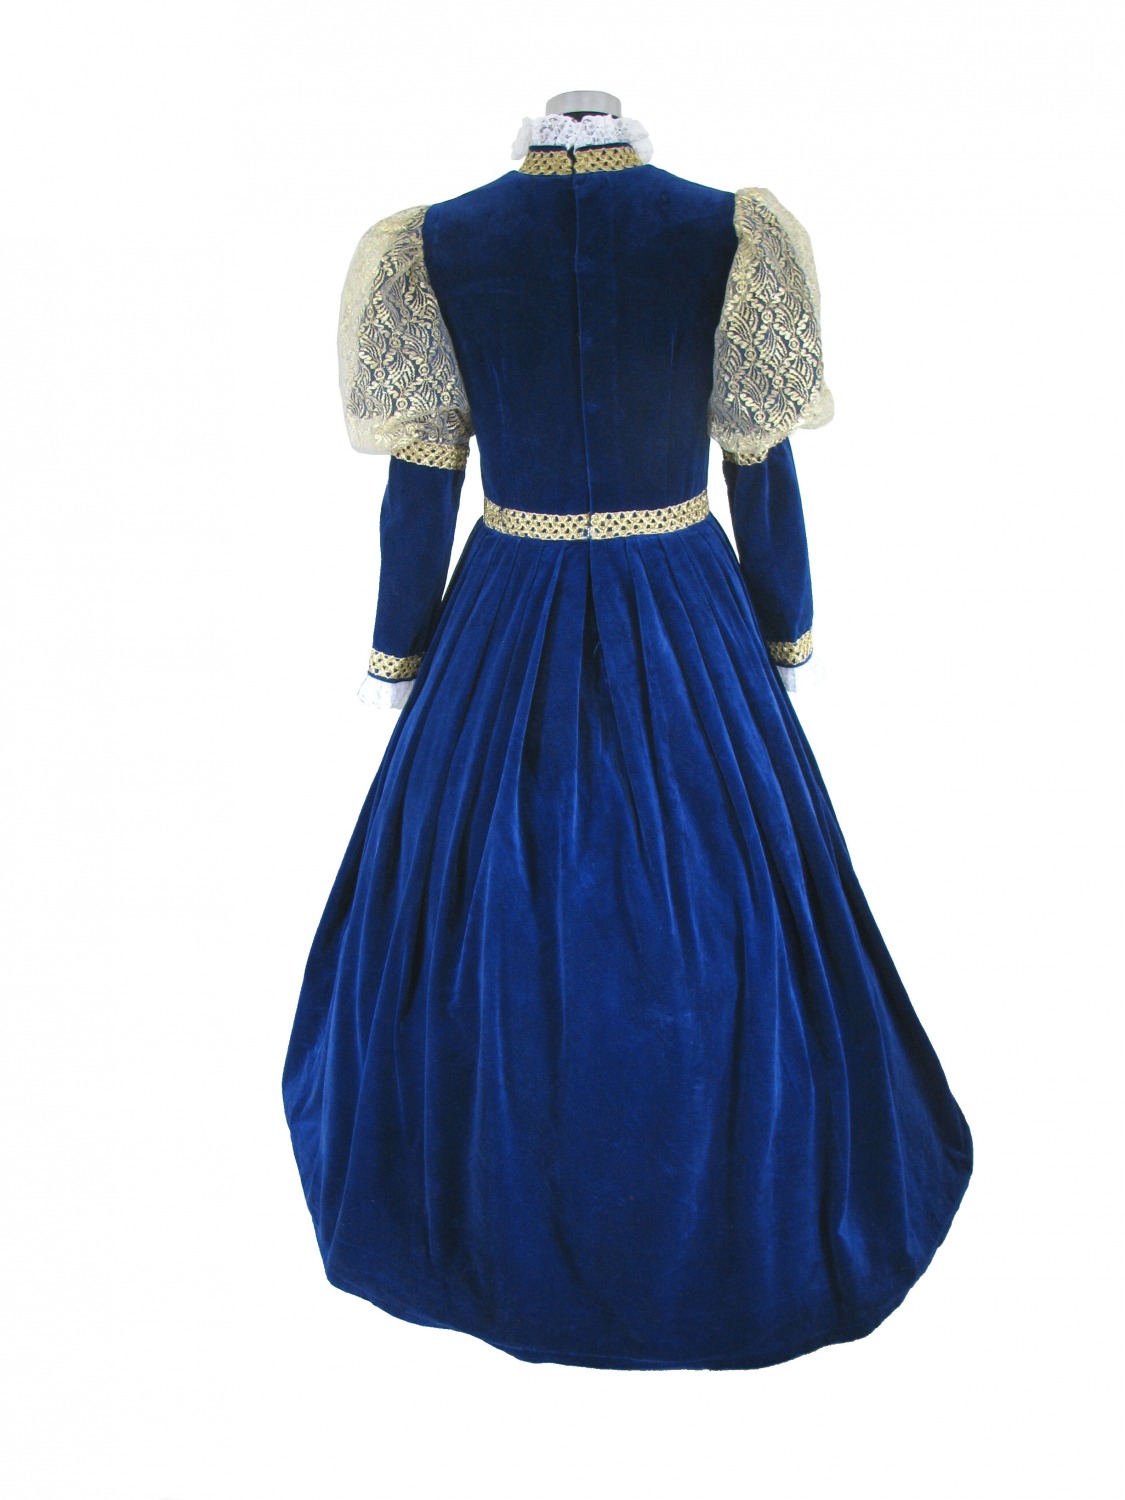 Ladies Tudor Elizabethan Costume Size 10 - 12 Image